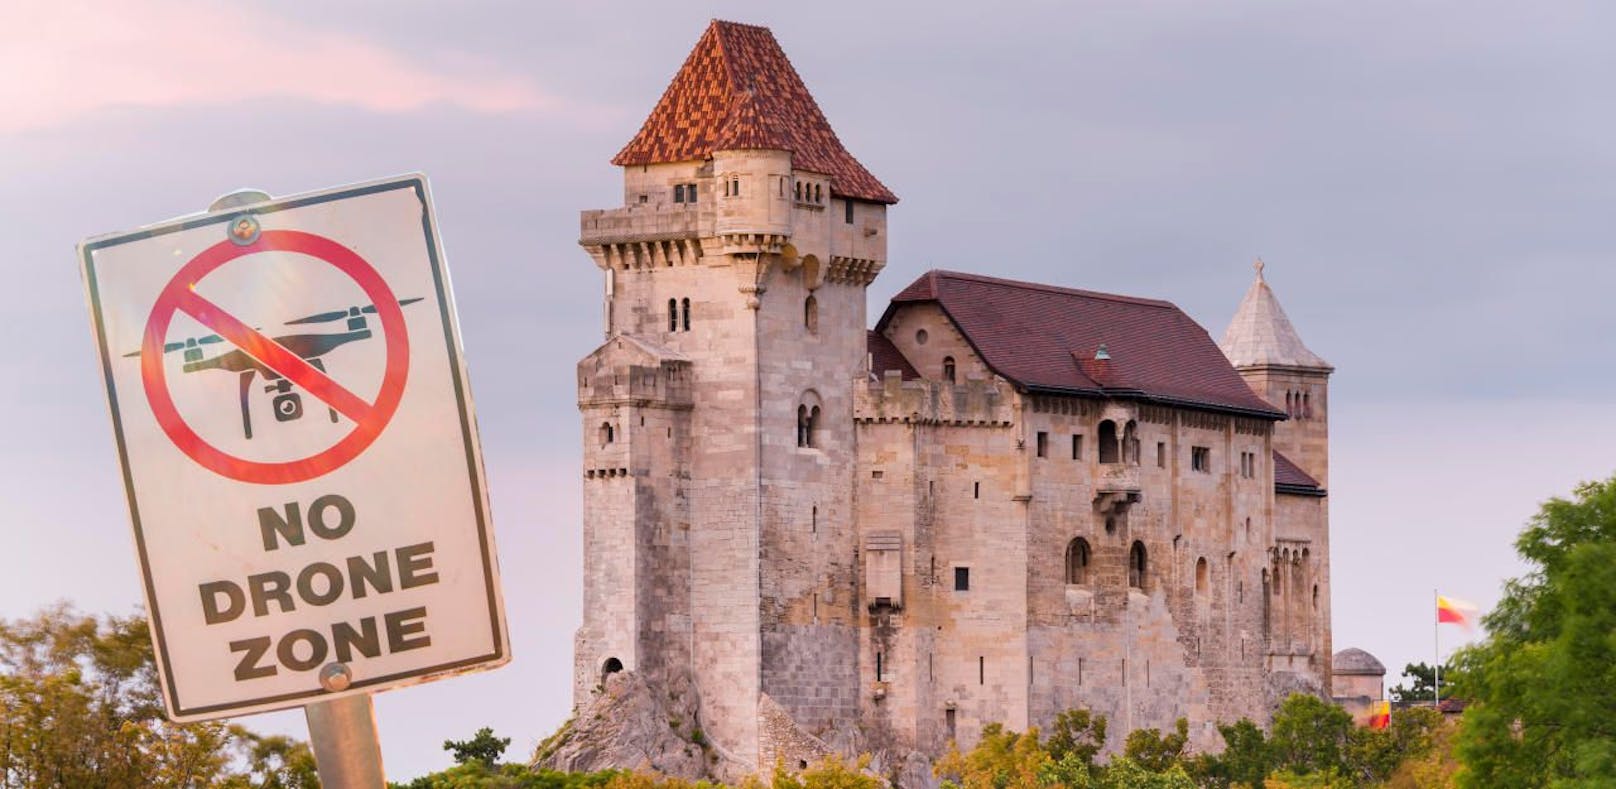 Ab sofort gilt über der Burg Liechtenstein in Maria Enzersdorf ein absolutes Drohnenflug-Verbot.